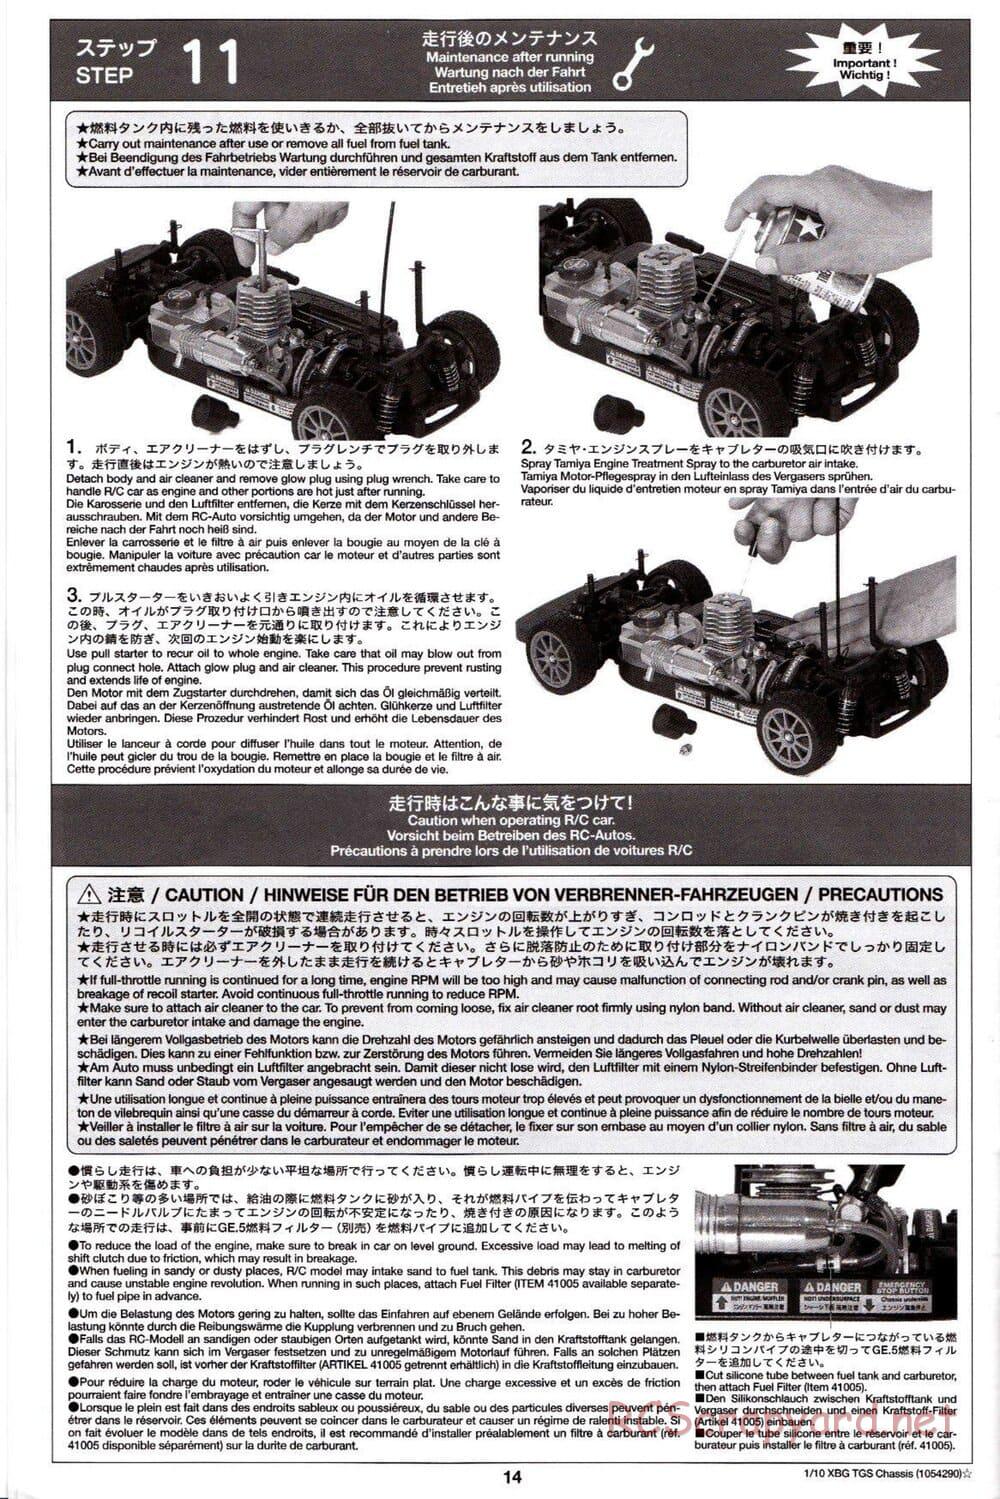 Tamiya - TGS Chassis - Manual - Page 14